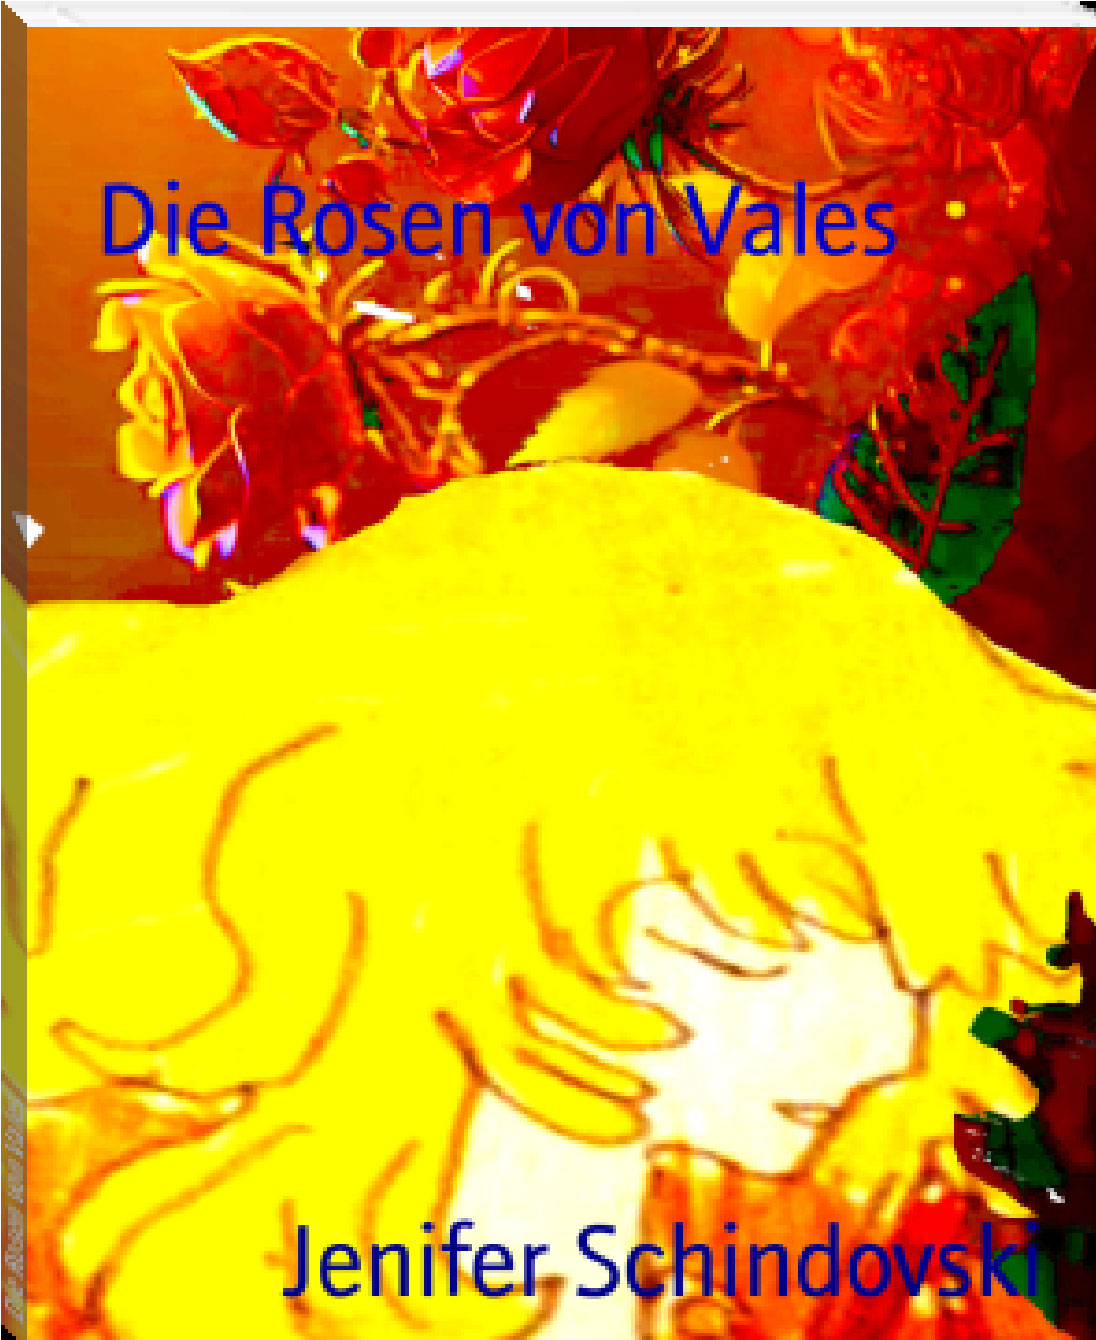 Die Rosen von Vales rendition image